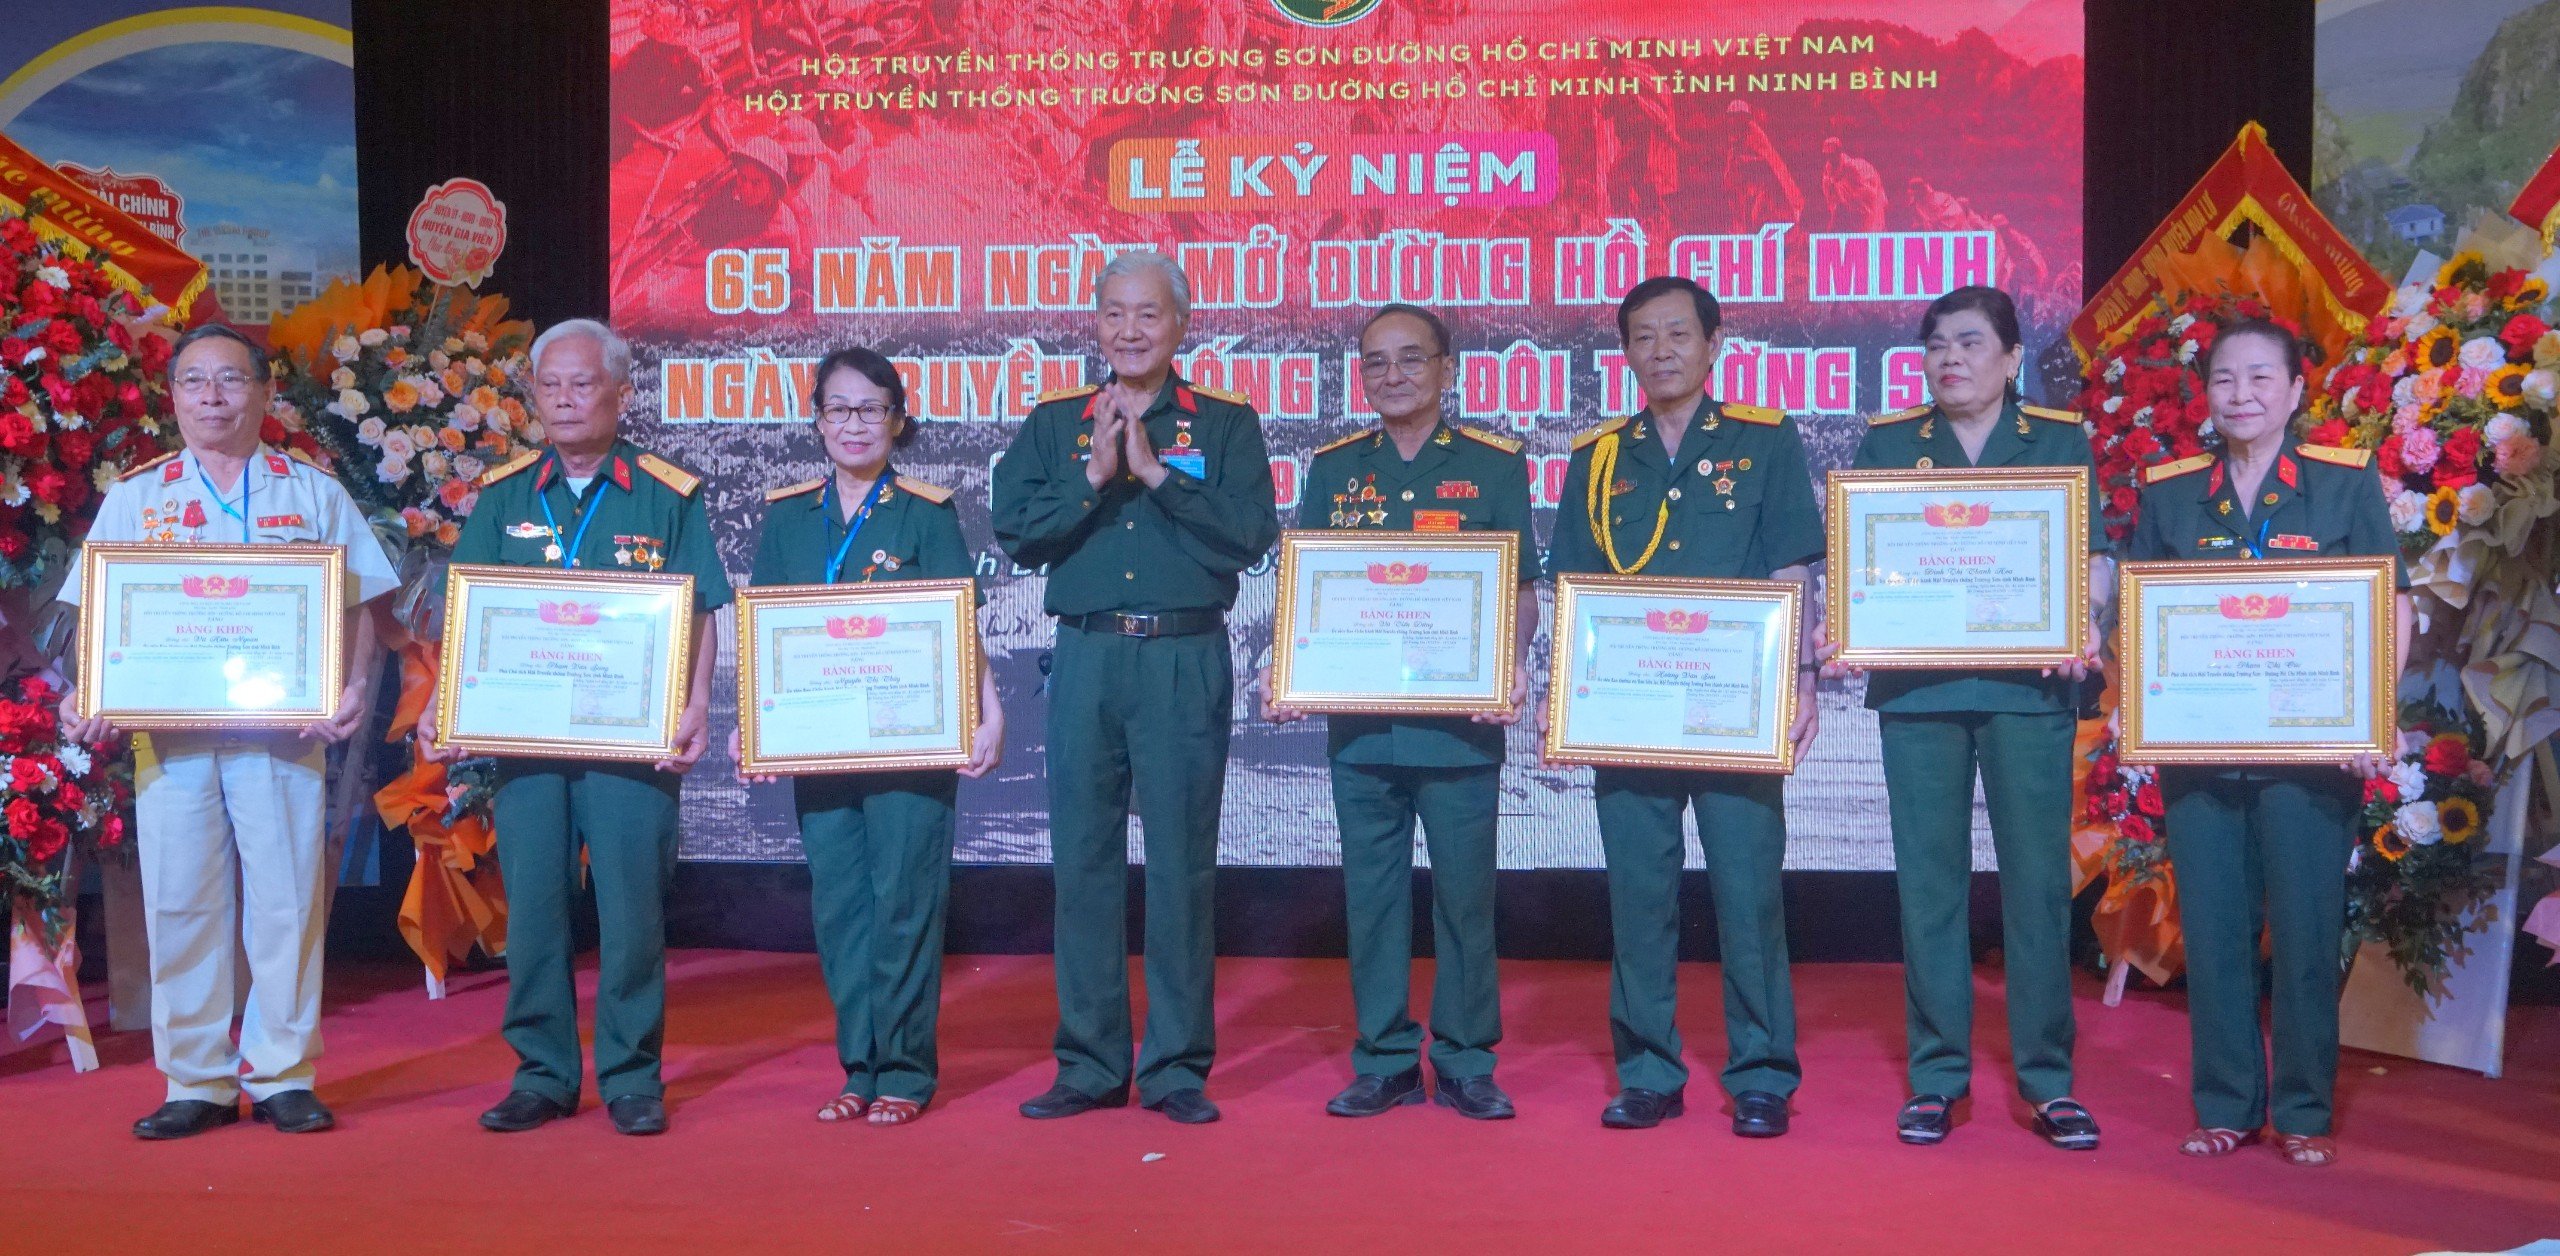 Ninh Bình - Kỷ niệm 65 năm ngày mở đường Hồ Chí Minh – ngày truyền thống bộ đội Trường Sơn